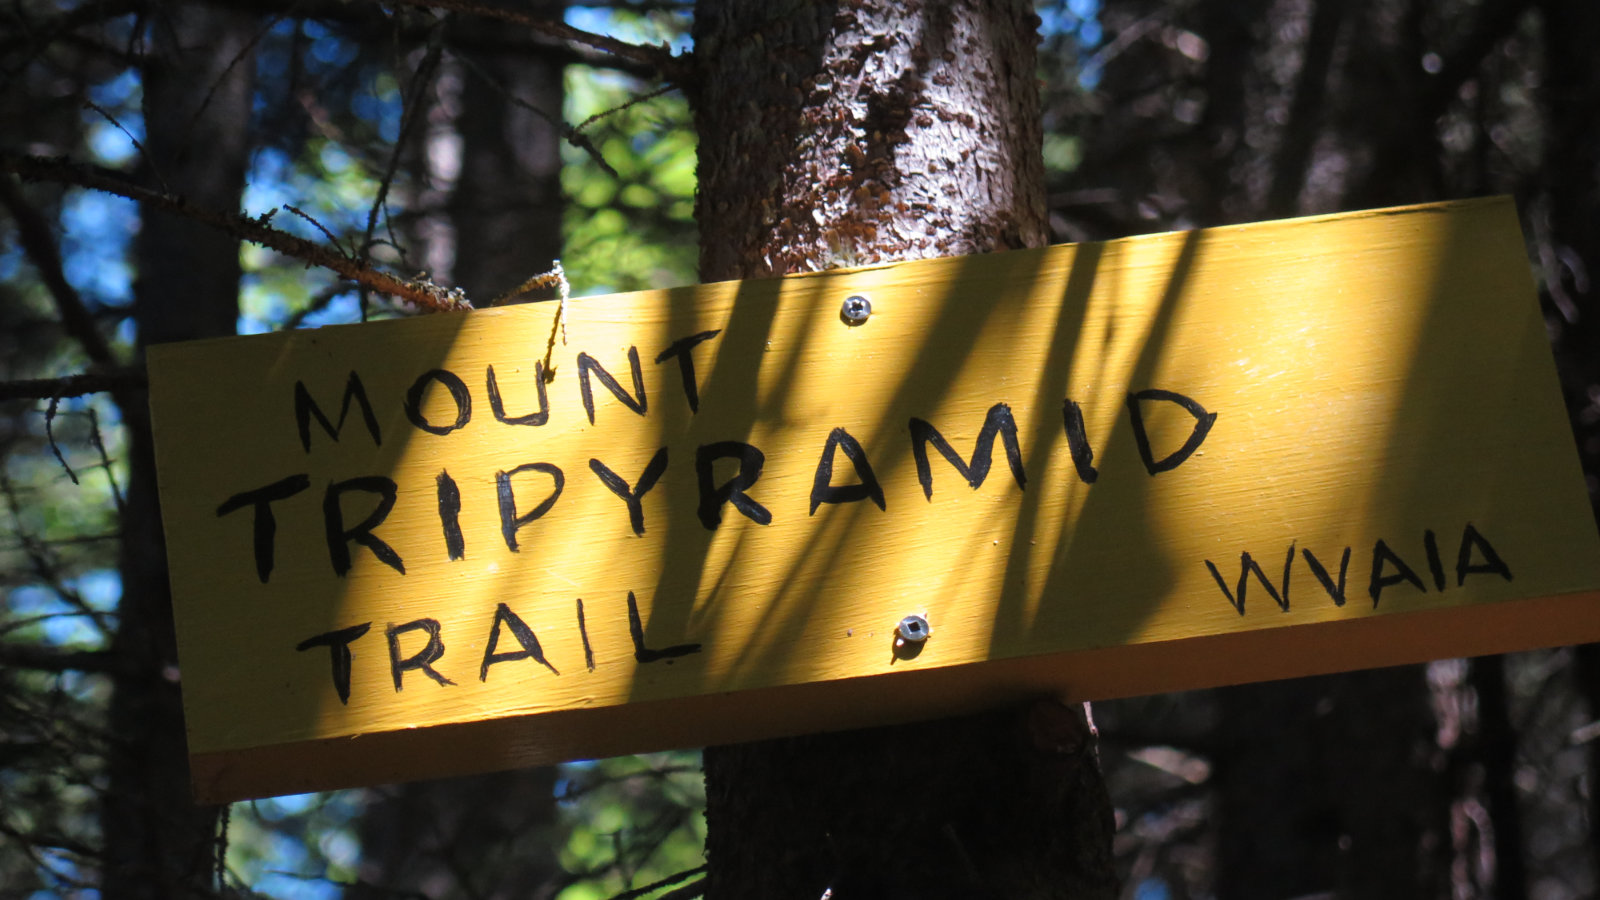 Trail_Sign_Tripyramid_20190720